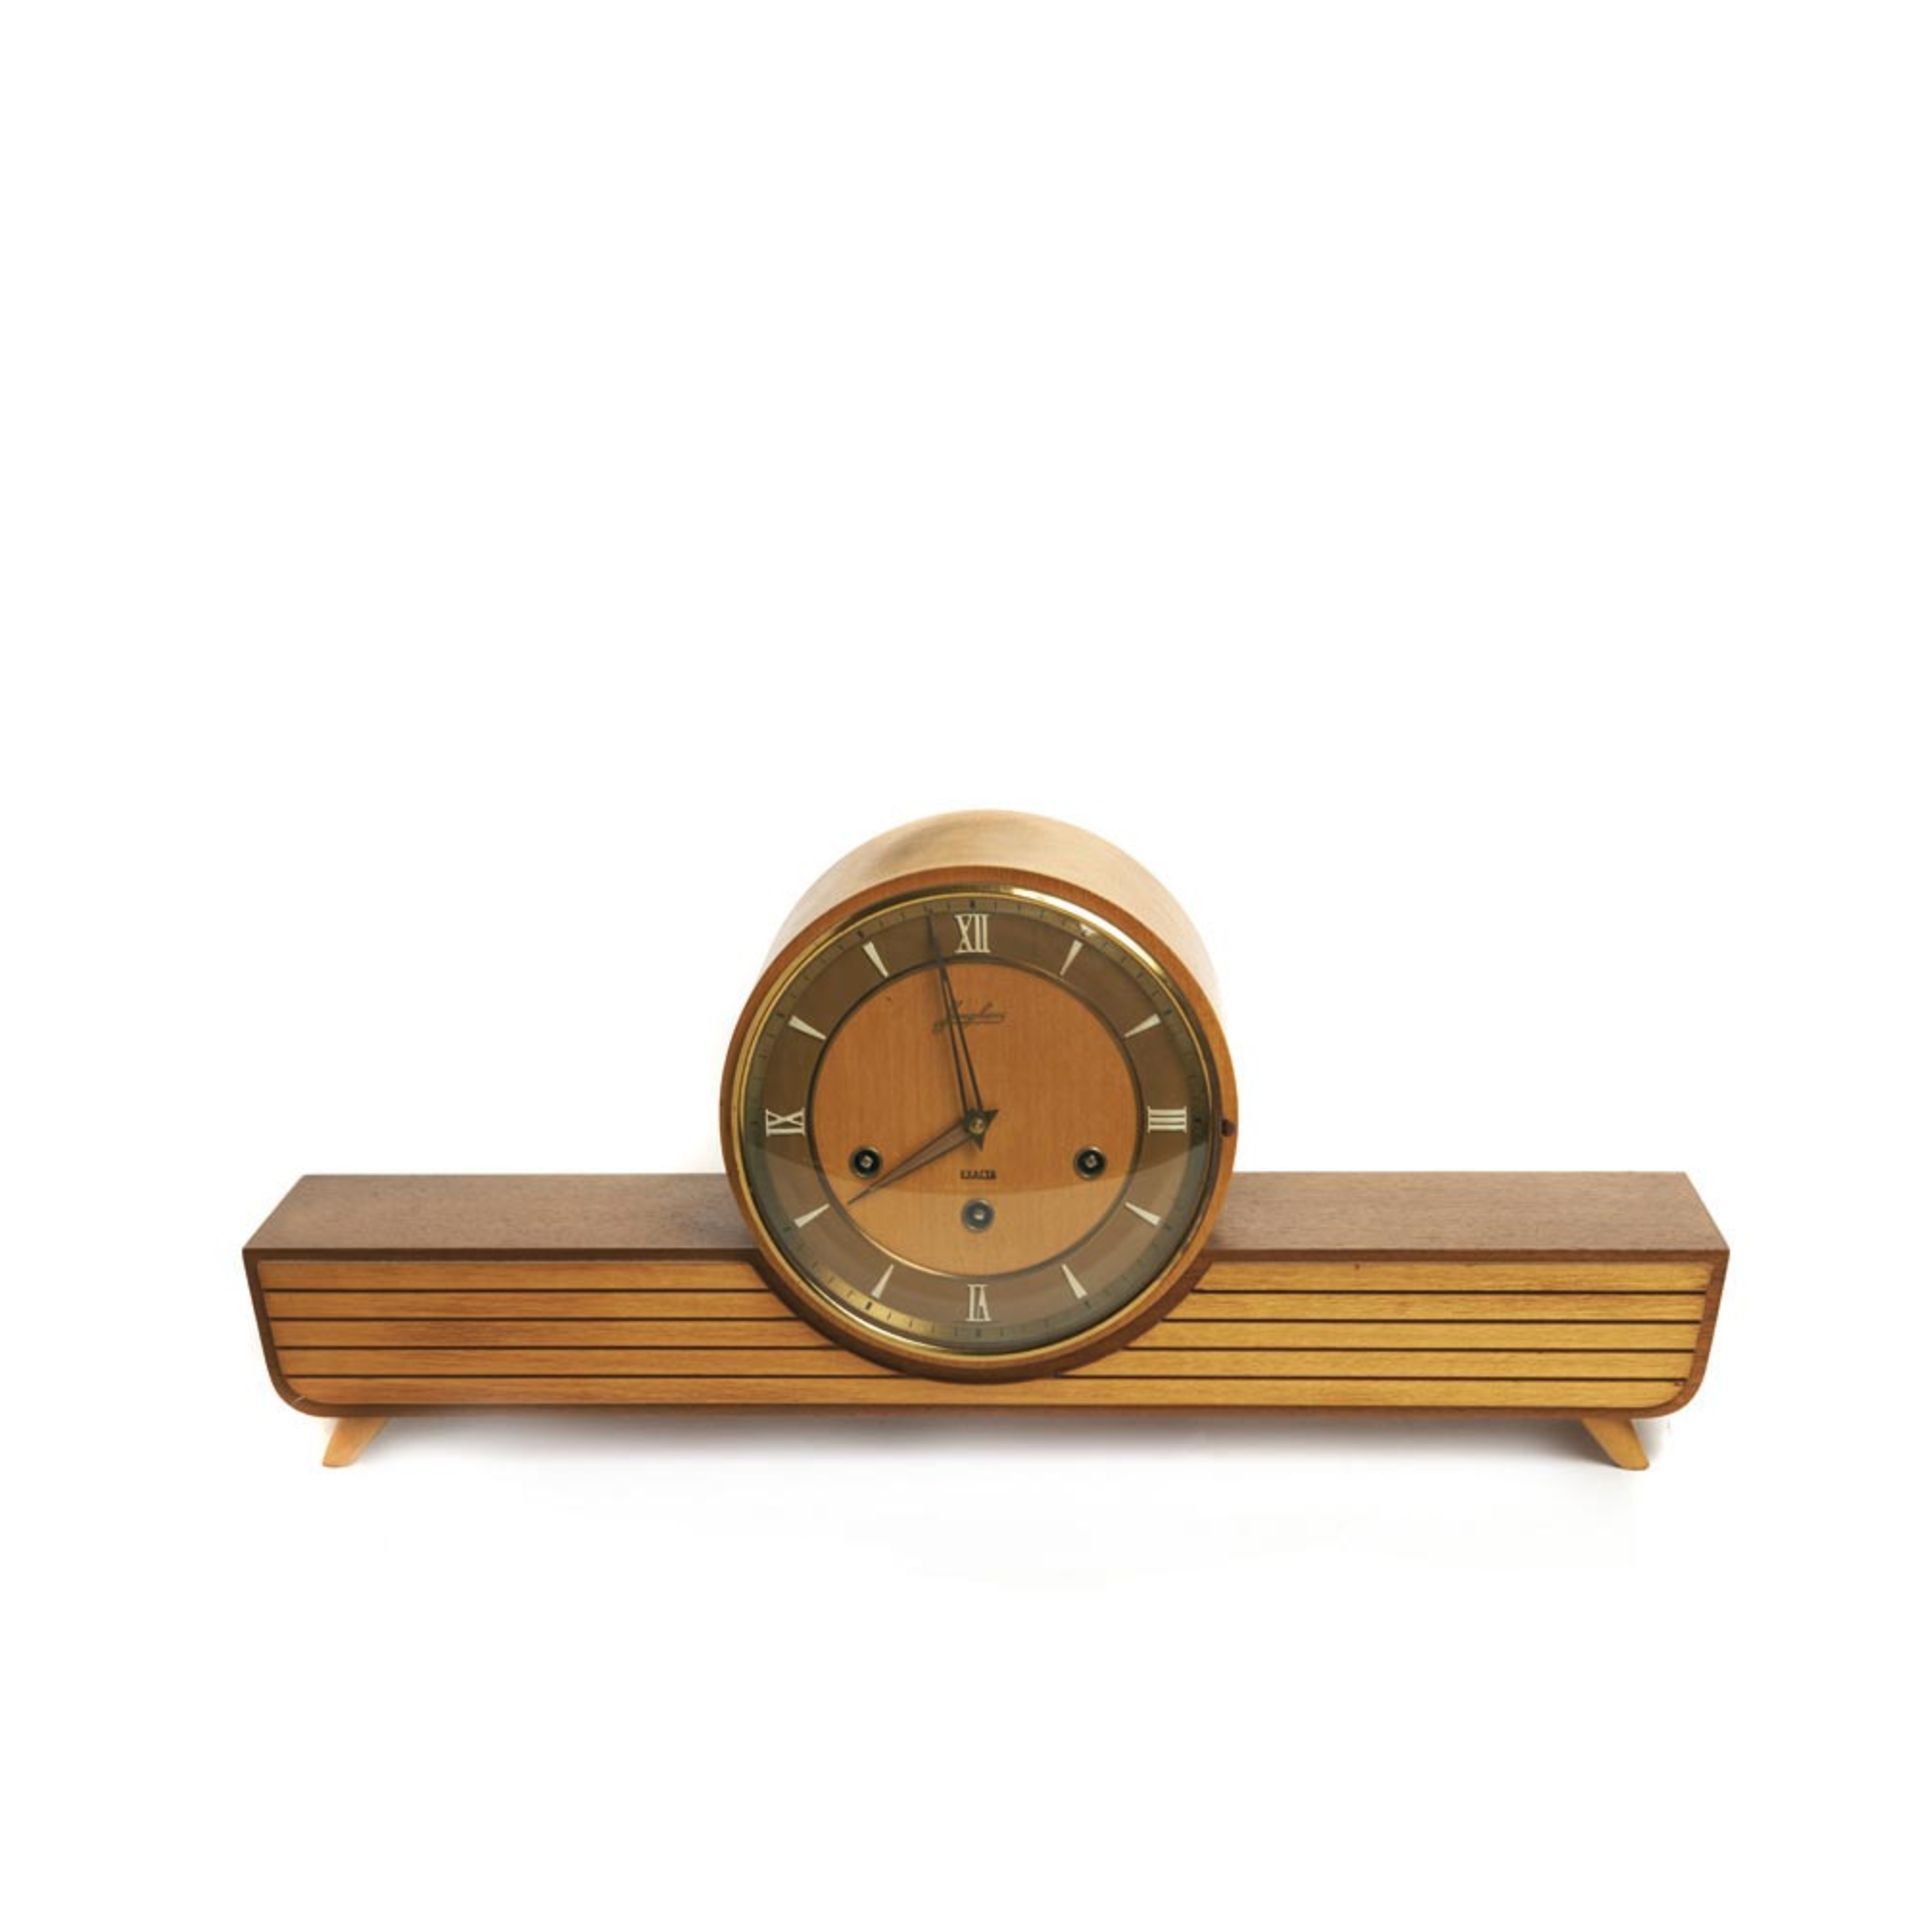 Junghans Exacta Art Deco style table clock Reloj de sobremesa Junghans, modelo Exacta, estilo Art